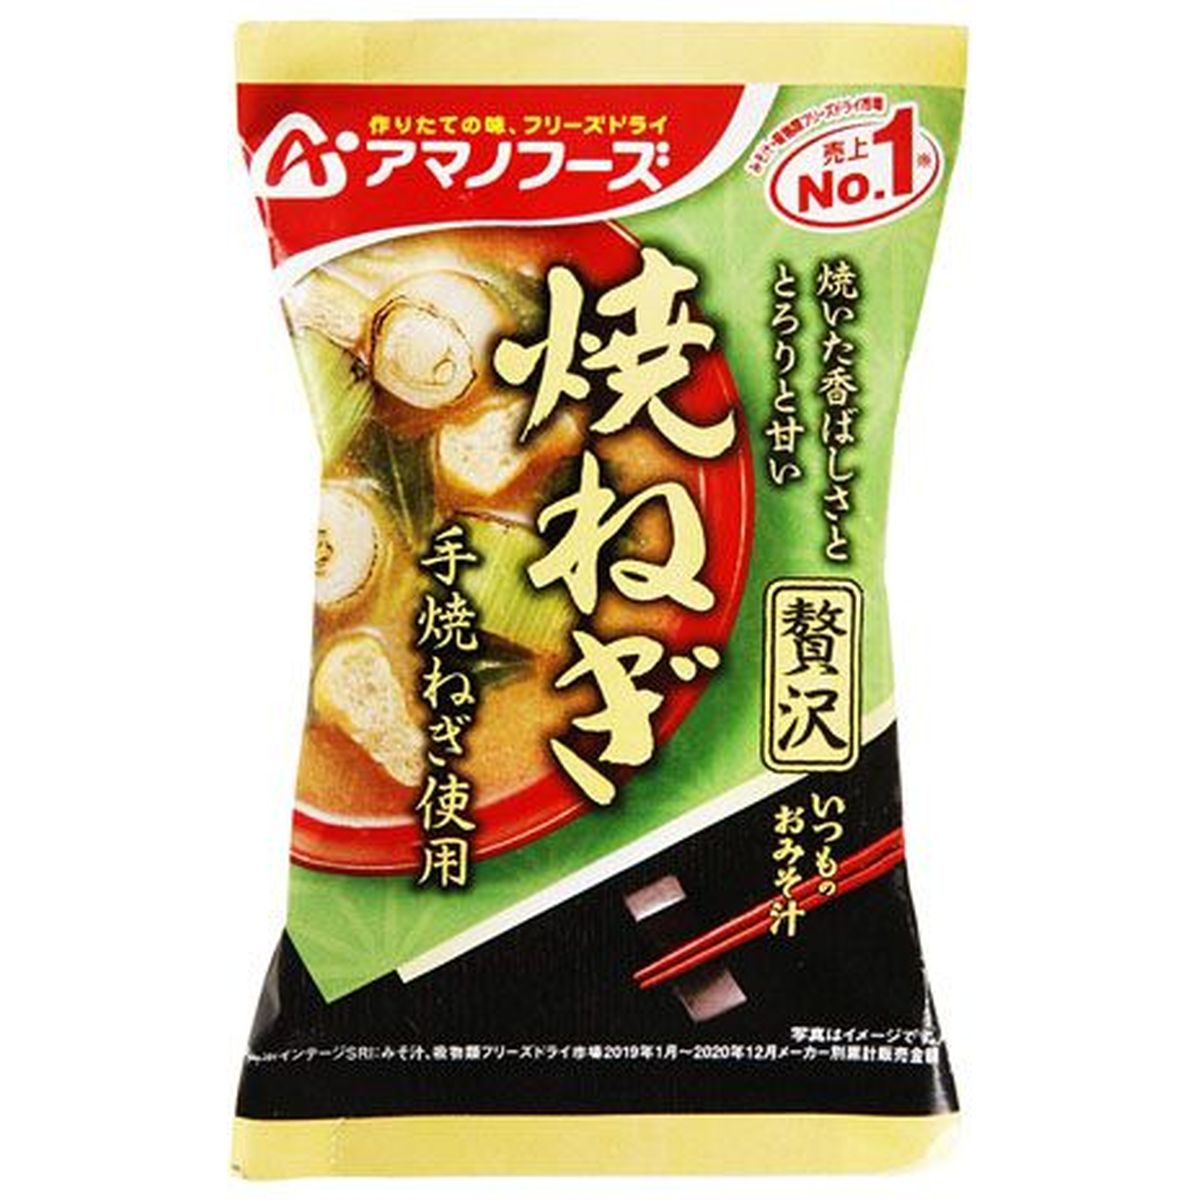 【10個入リ】アマノフーズ イツモノオミソ汁贅沢 焼ネギ 8.7g